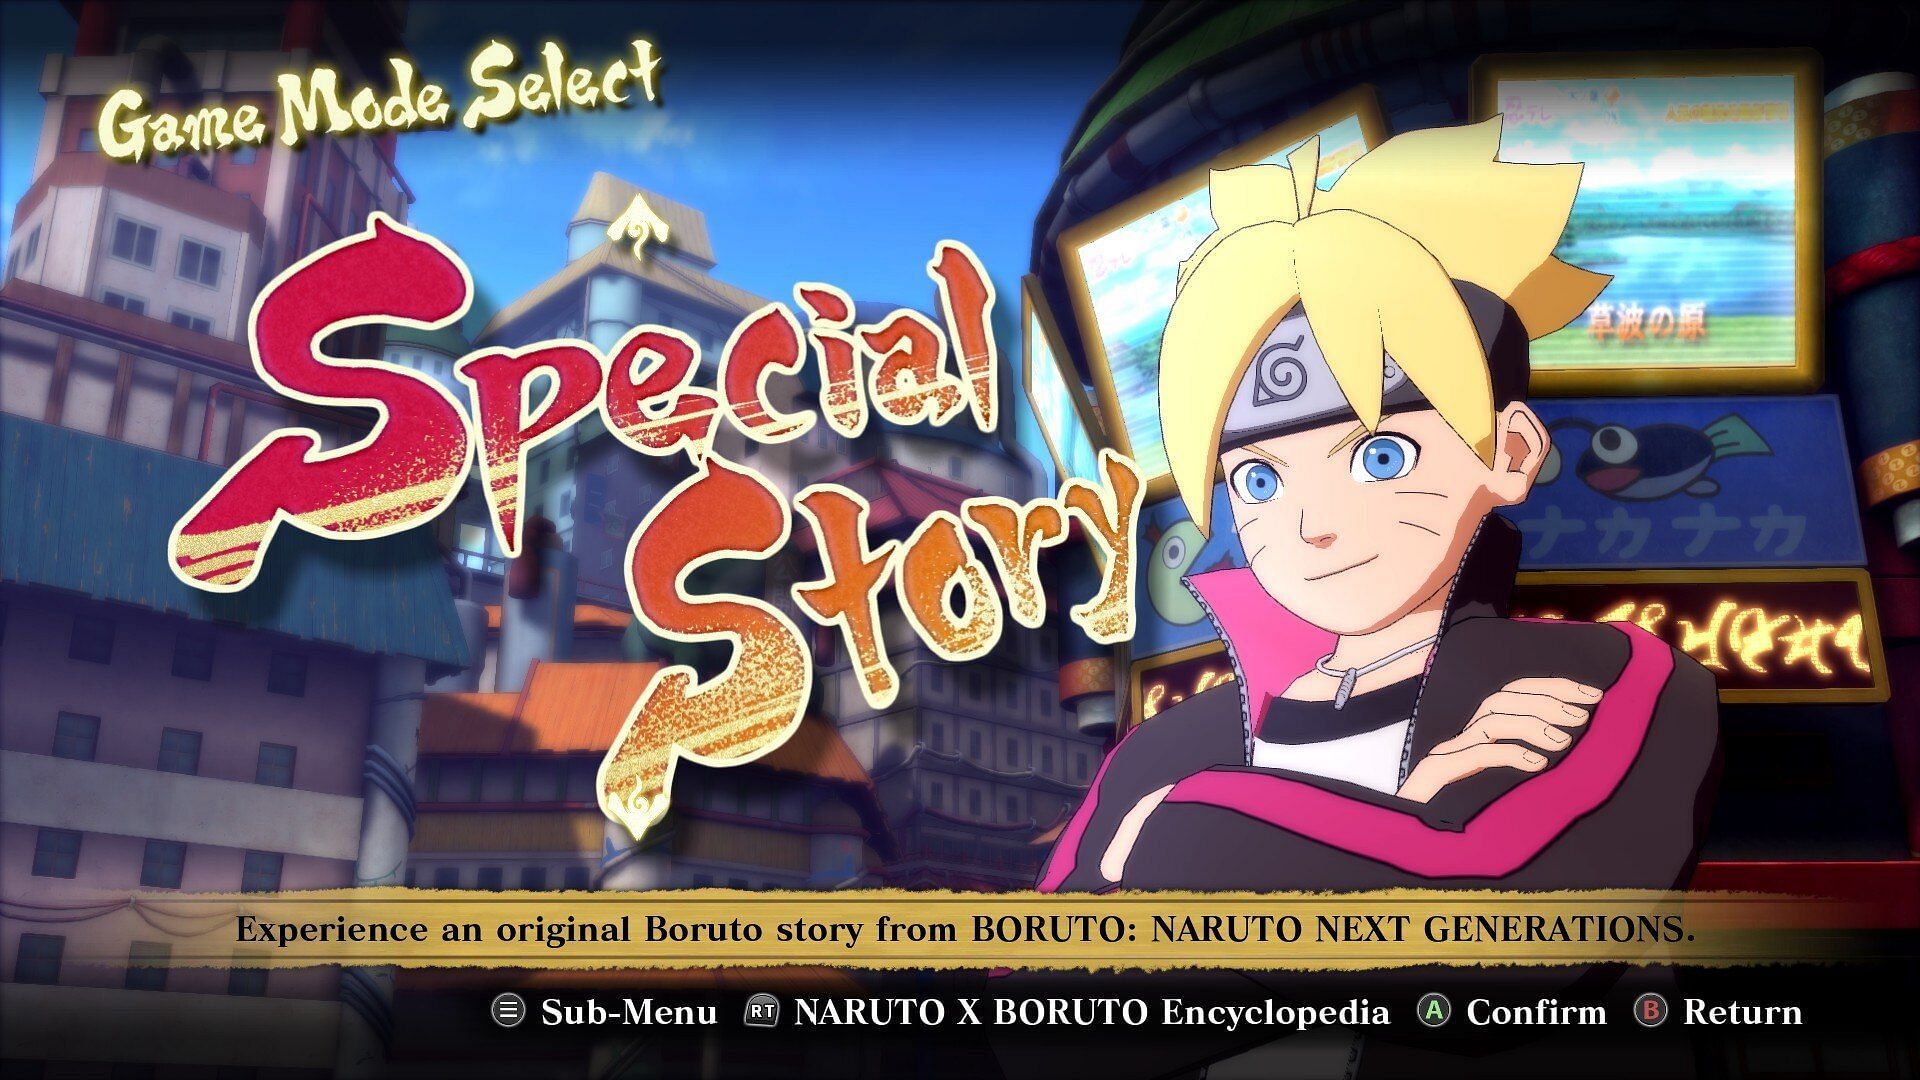 Naruto X Boruto Ultimate Ninja Storm Connections chega em 2023 - Game Arena